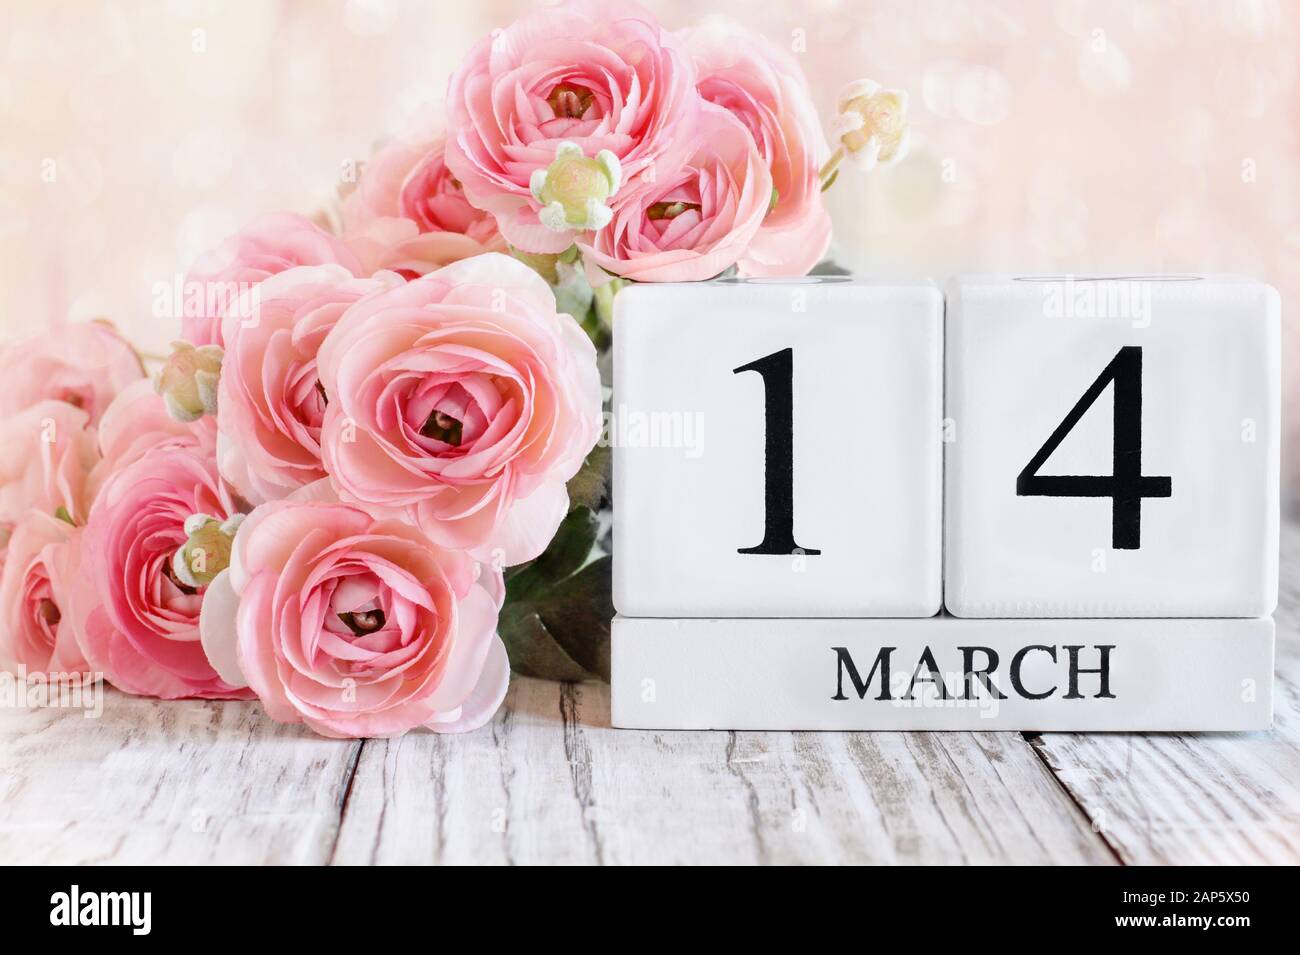 Blocs calendrier en bois blanc avec la date du 14 mars et fleurs roses de ranunculus sur une table en bois. Mise au point sélective avec arrière-plan flou. Banque D'Images